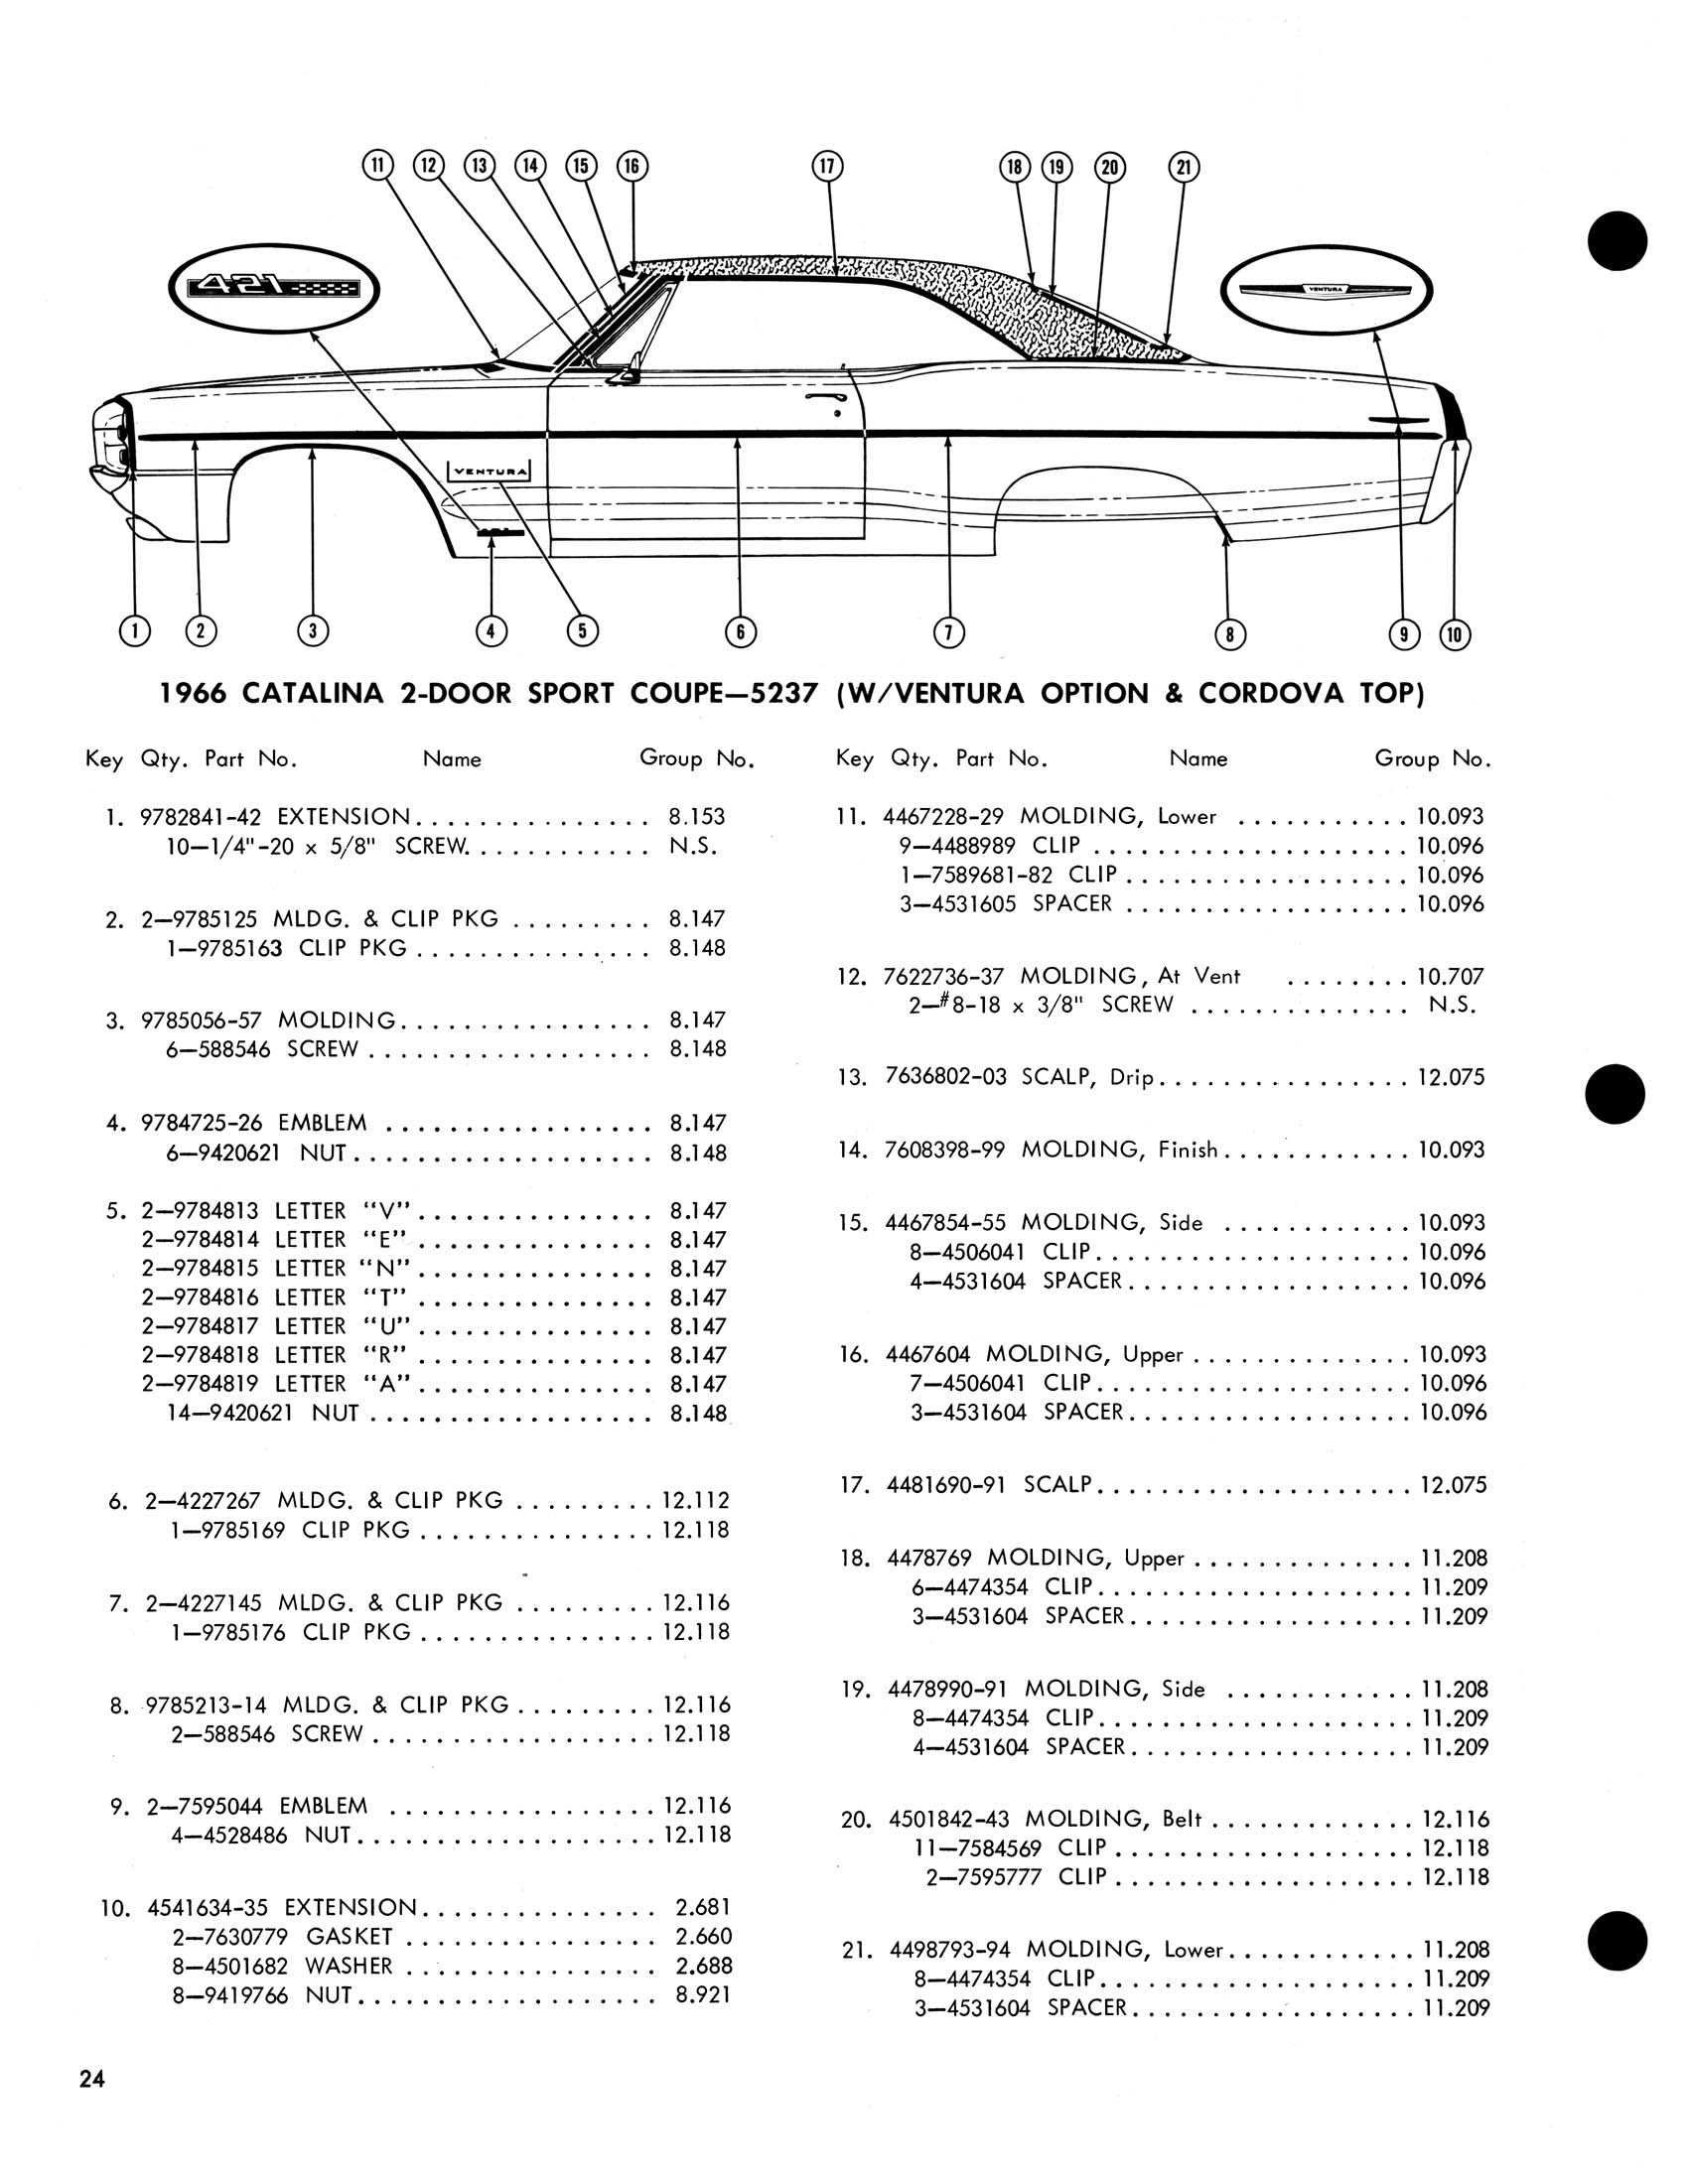 1966_Pontiac_Molding_and_Clip_Catalog-24